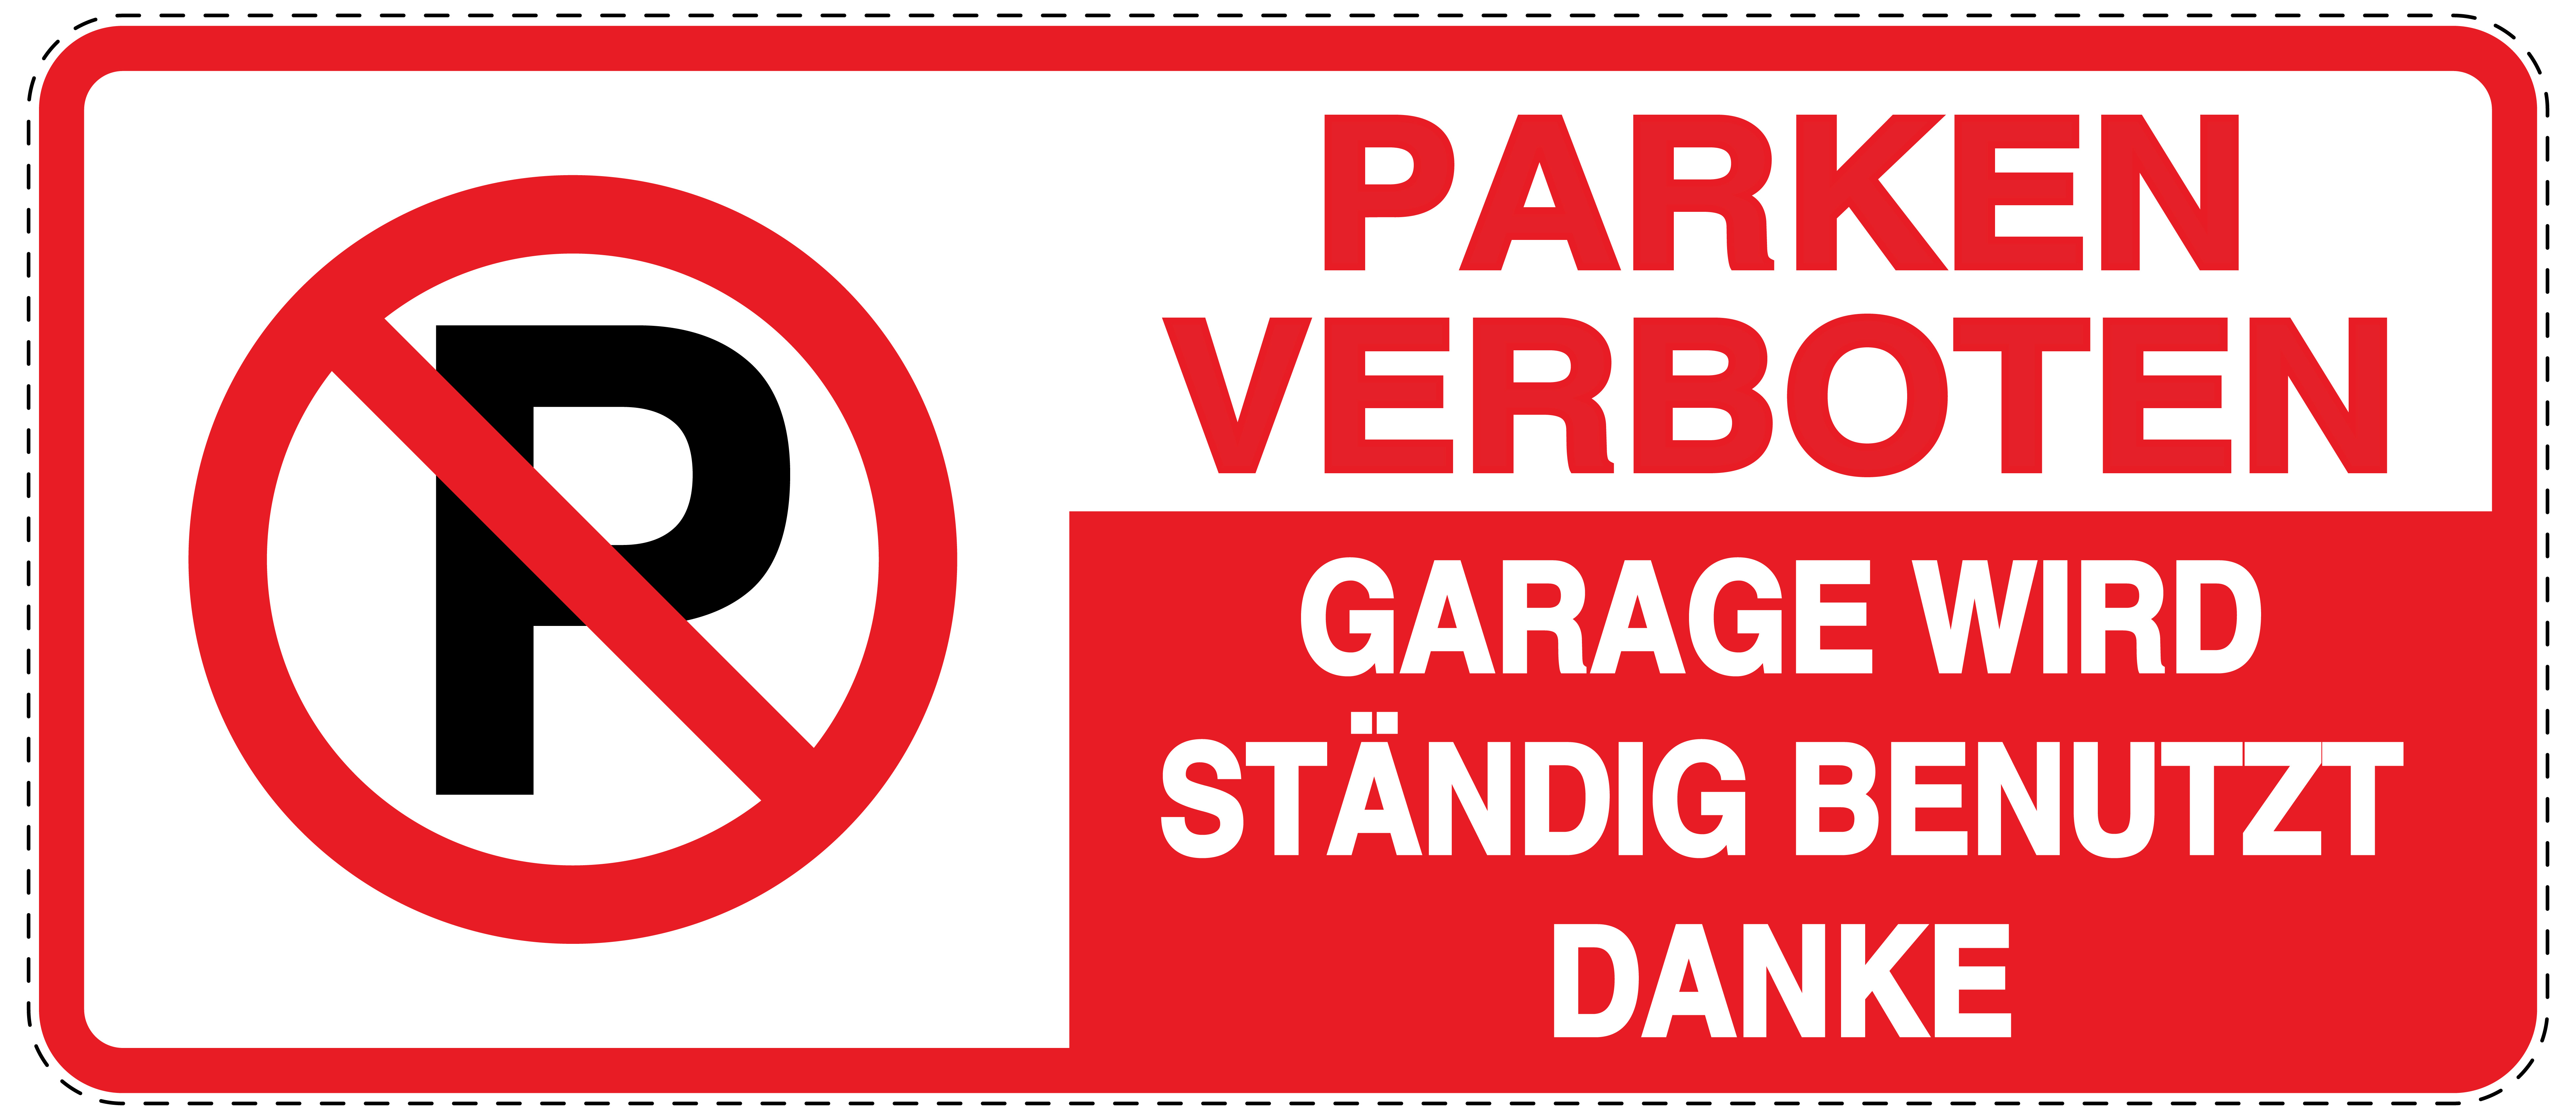 Parken verboten Garage wird ständig benutzt Aufkleber 30x20cm